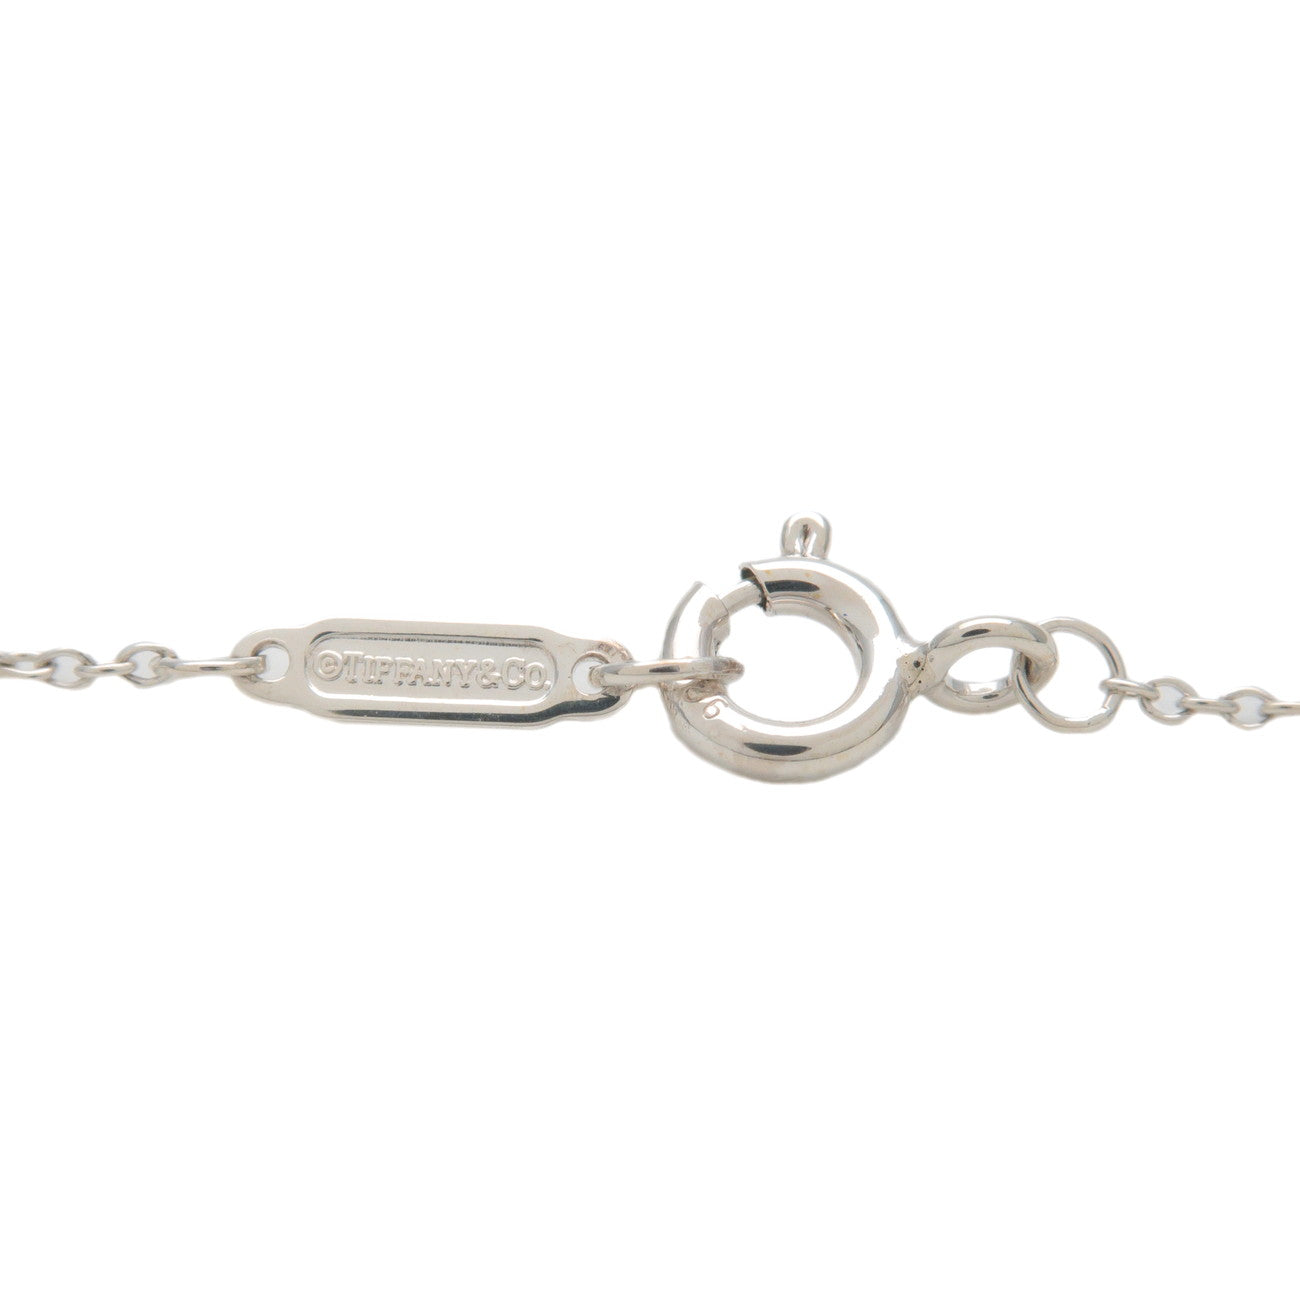 Tiffany&Co. Return to Tiffany Mini Double Heart Tag Necklace SV925